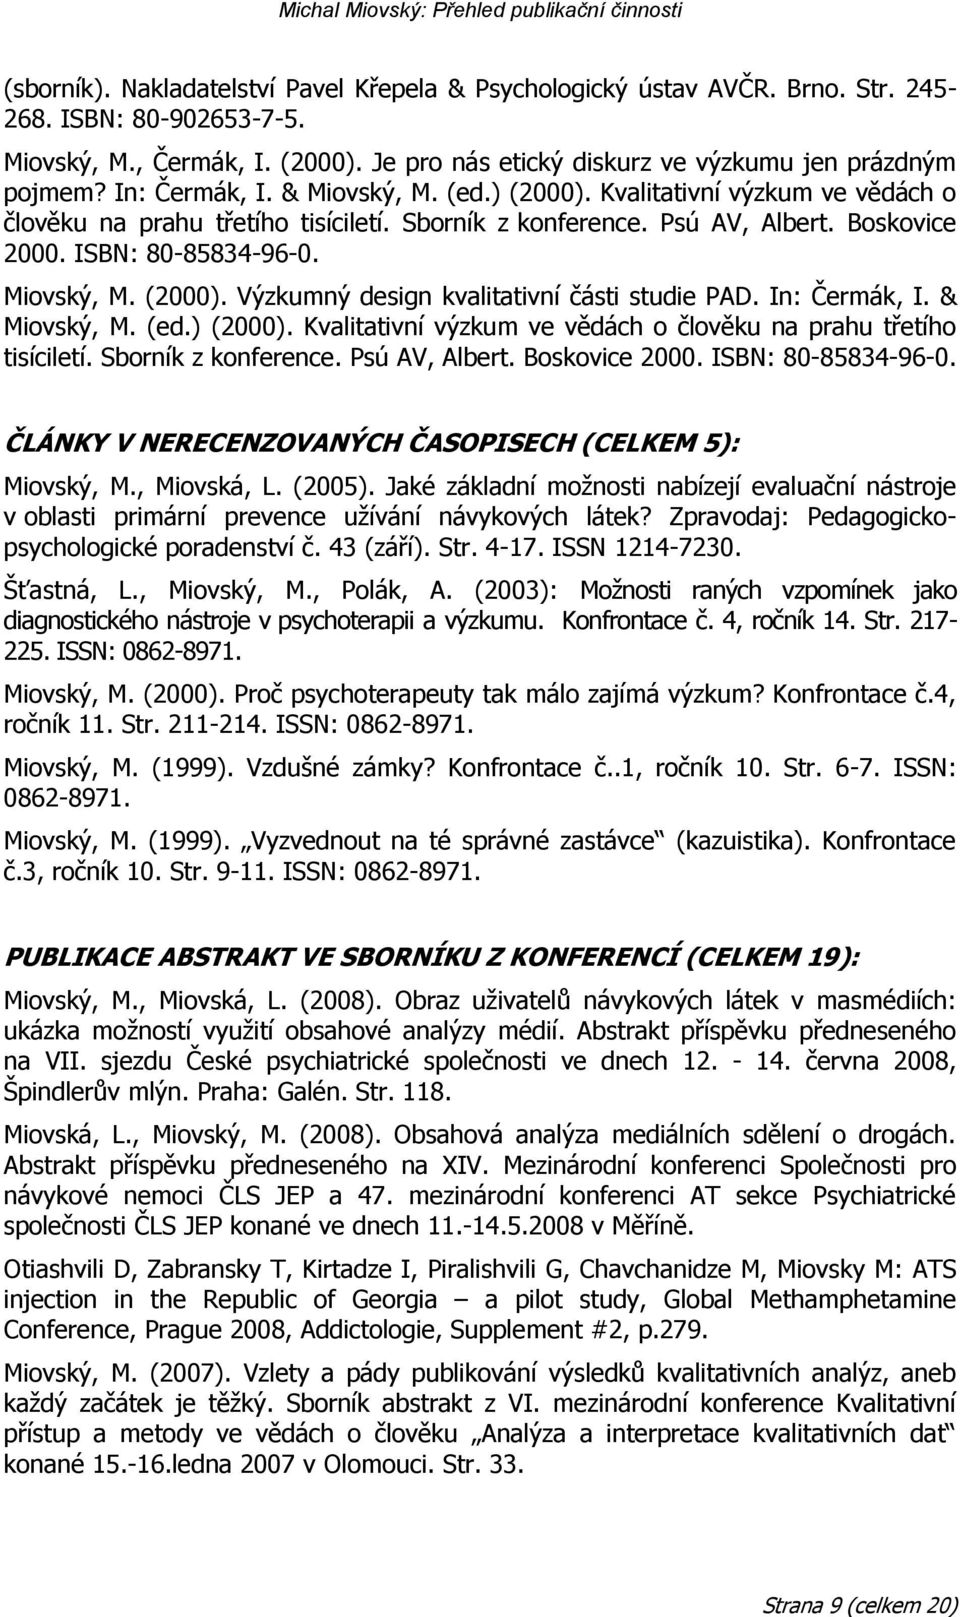 In: Čermák, I. & Miovský, M. (ed.) (2000). Kvalitativní výzkum ve vědách o člověku na prahu třetího tisíciletí. Sborník z konference. Psú AV, Albert. Boskovice 2000. ISBN: 80-85834-96-0.